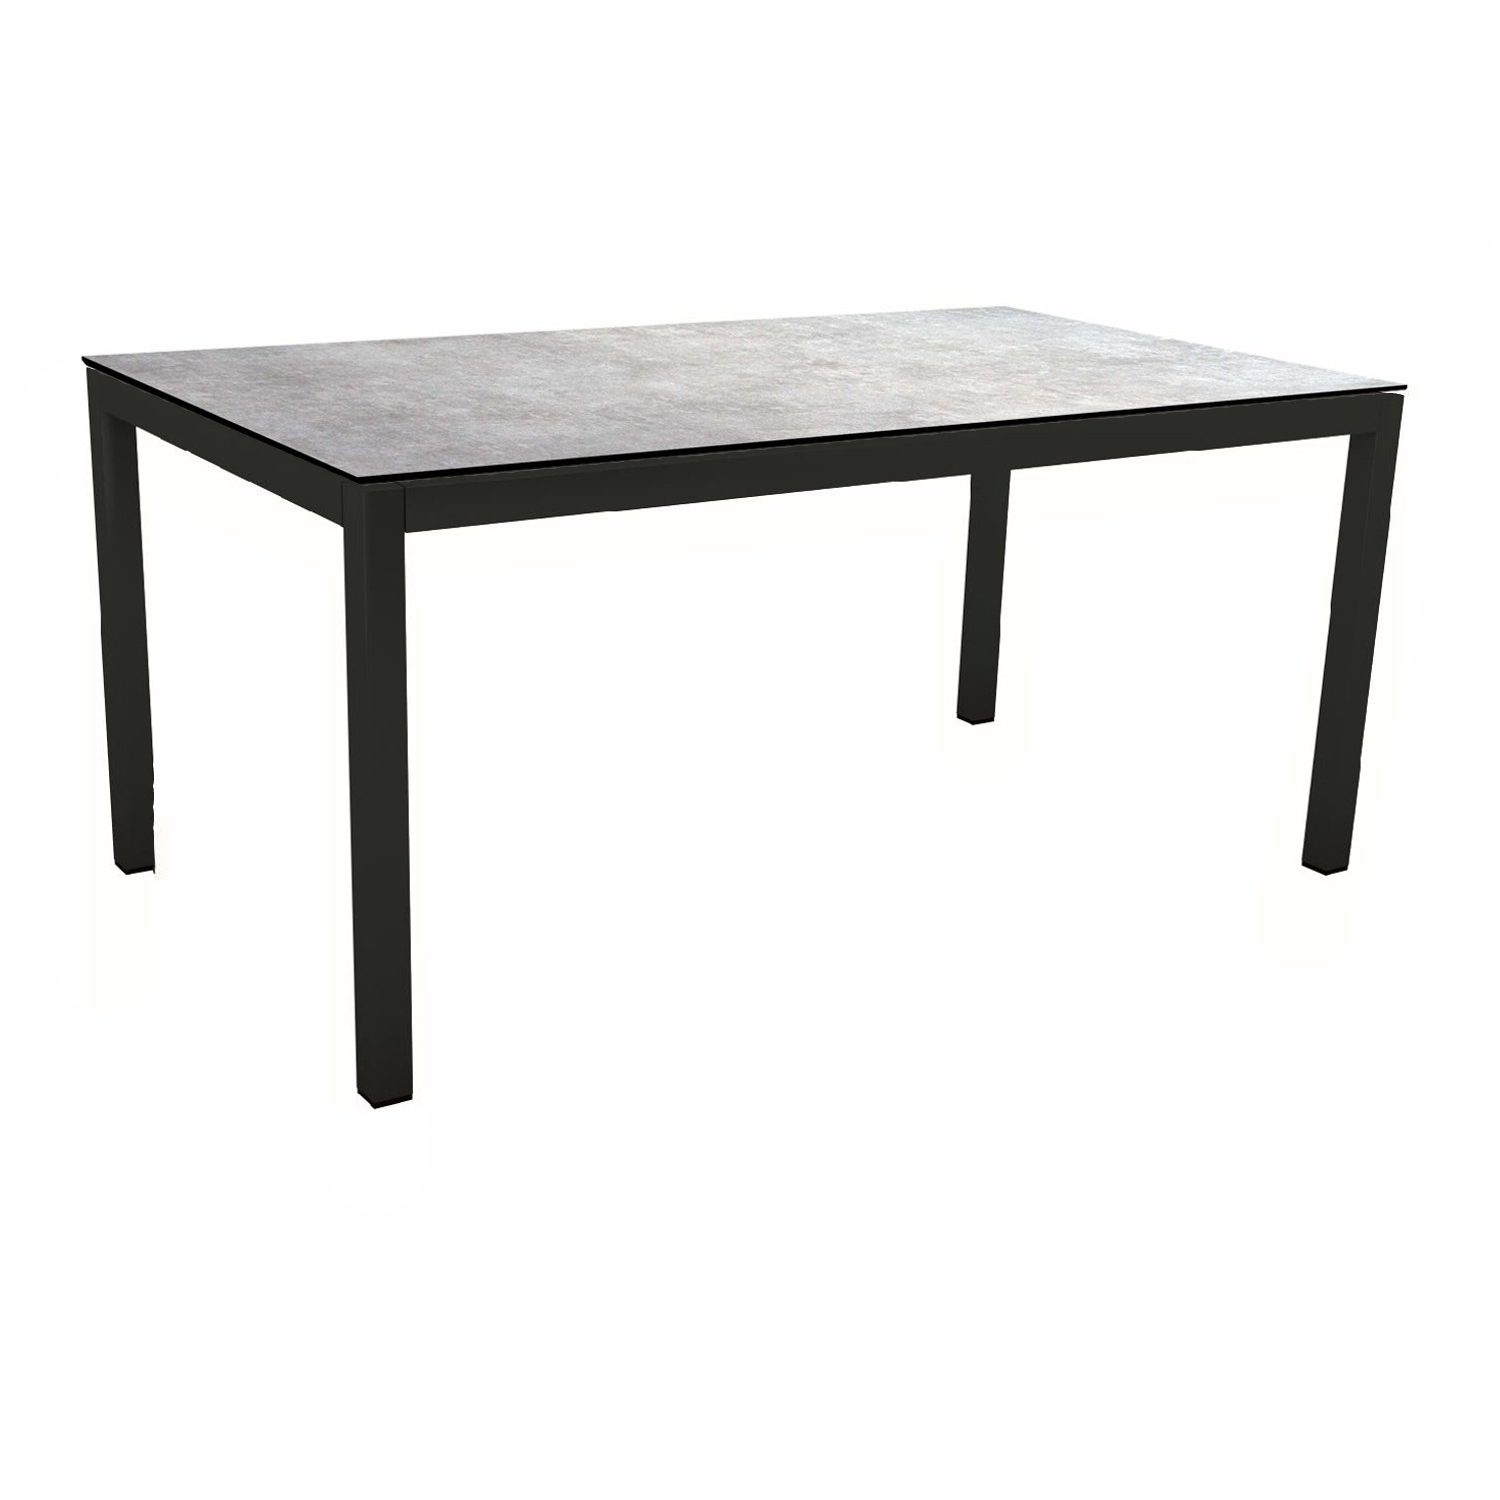 Stern Gartentisch, Gestell Aluminium schwarz matt, Tischplatte HPL Metallic Grau, 130x80 cm